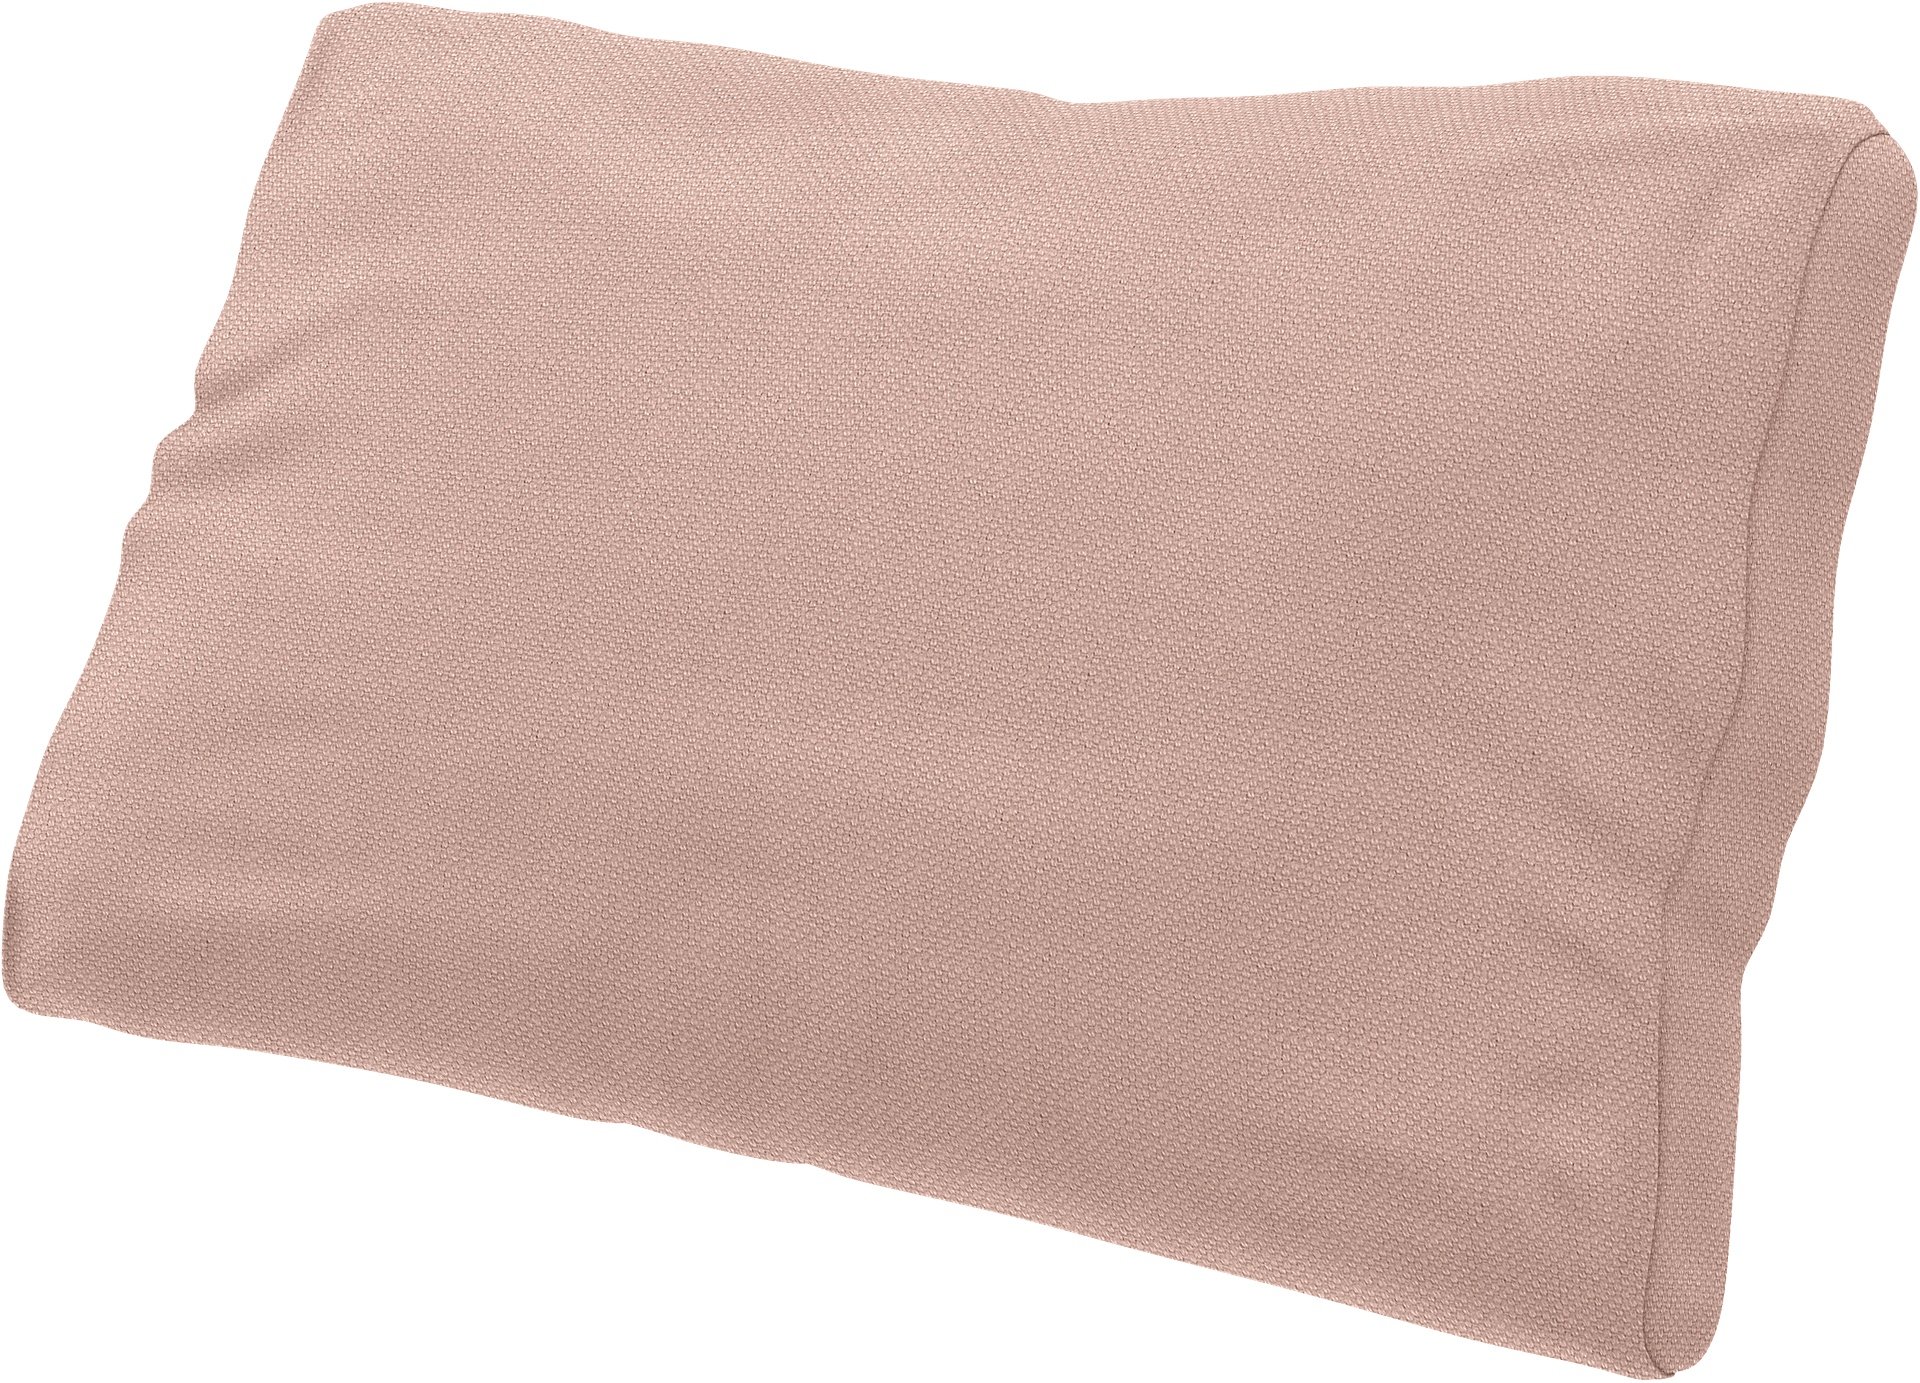 IKEA - Lumbar cushion cover Farlov, Blush, Linen - Bemz